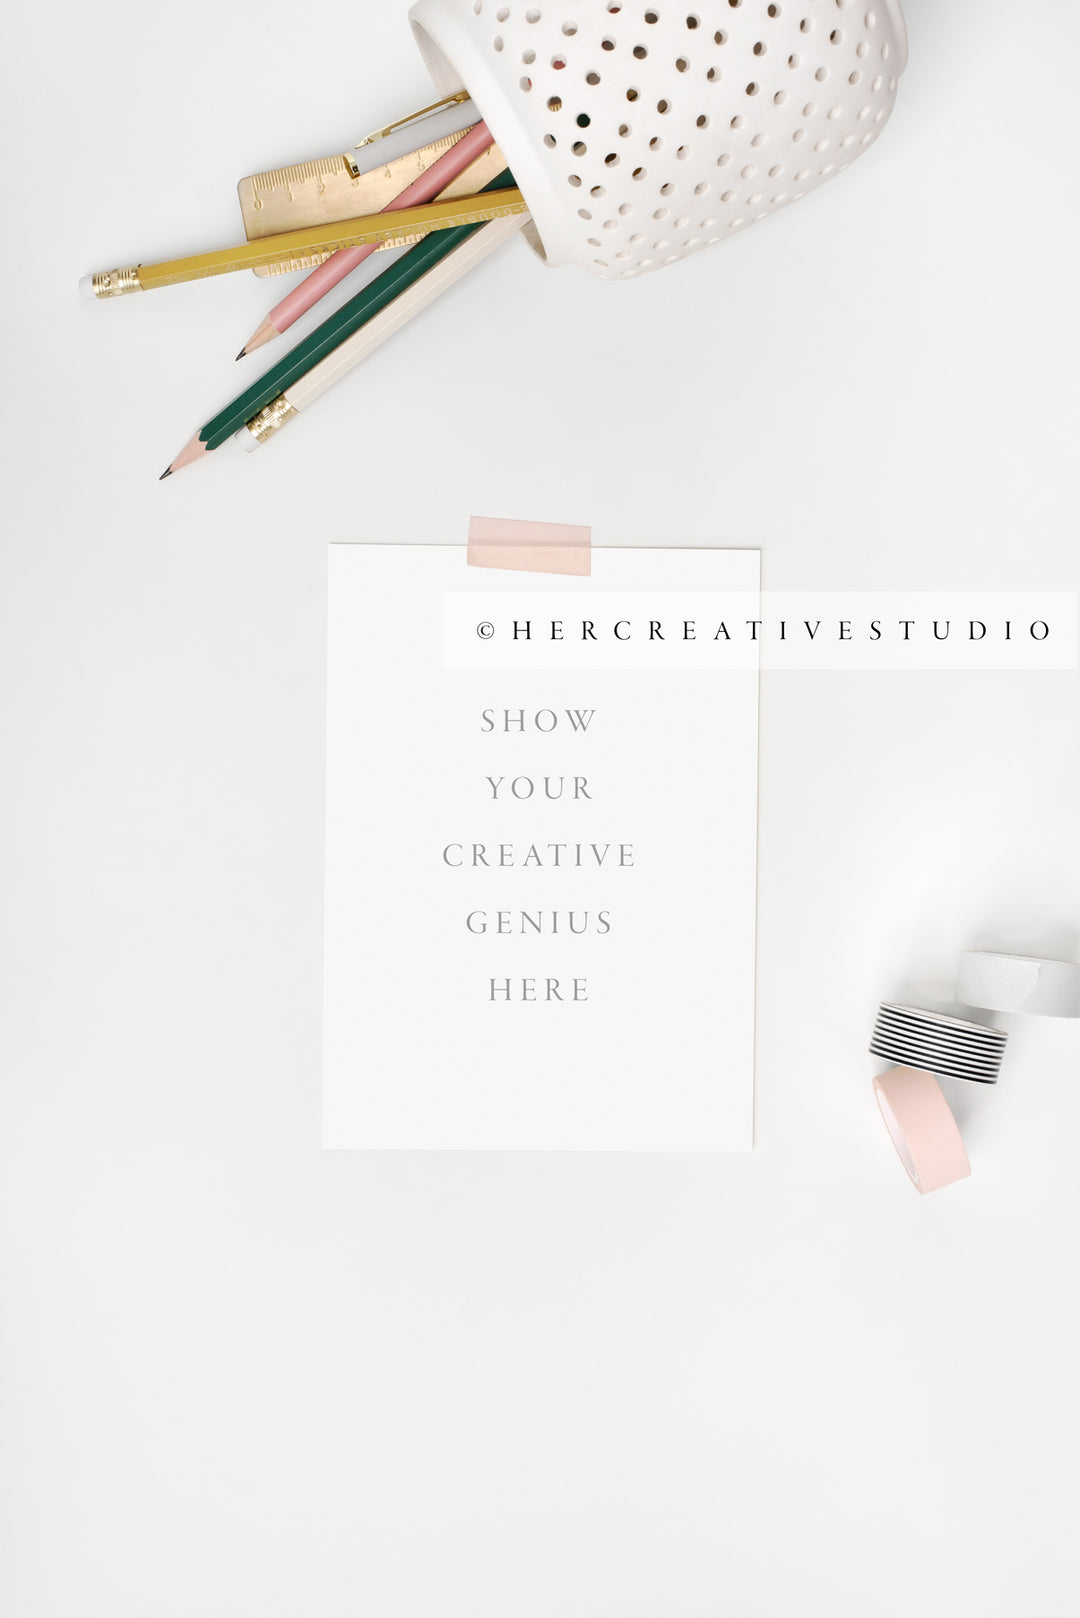 Stationery, Pencils & Washi Tape on White Background, Styled Stock Image